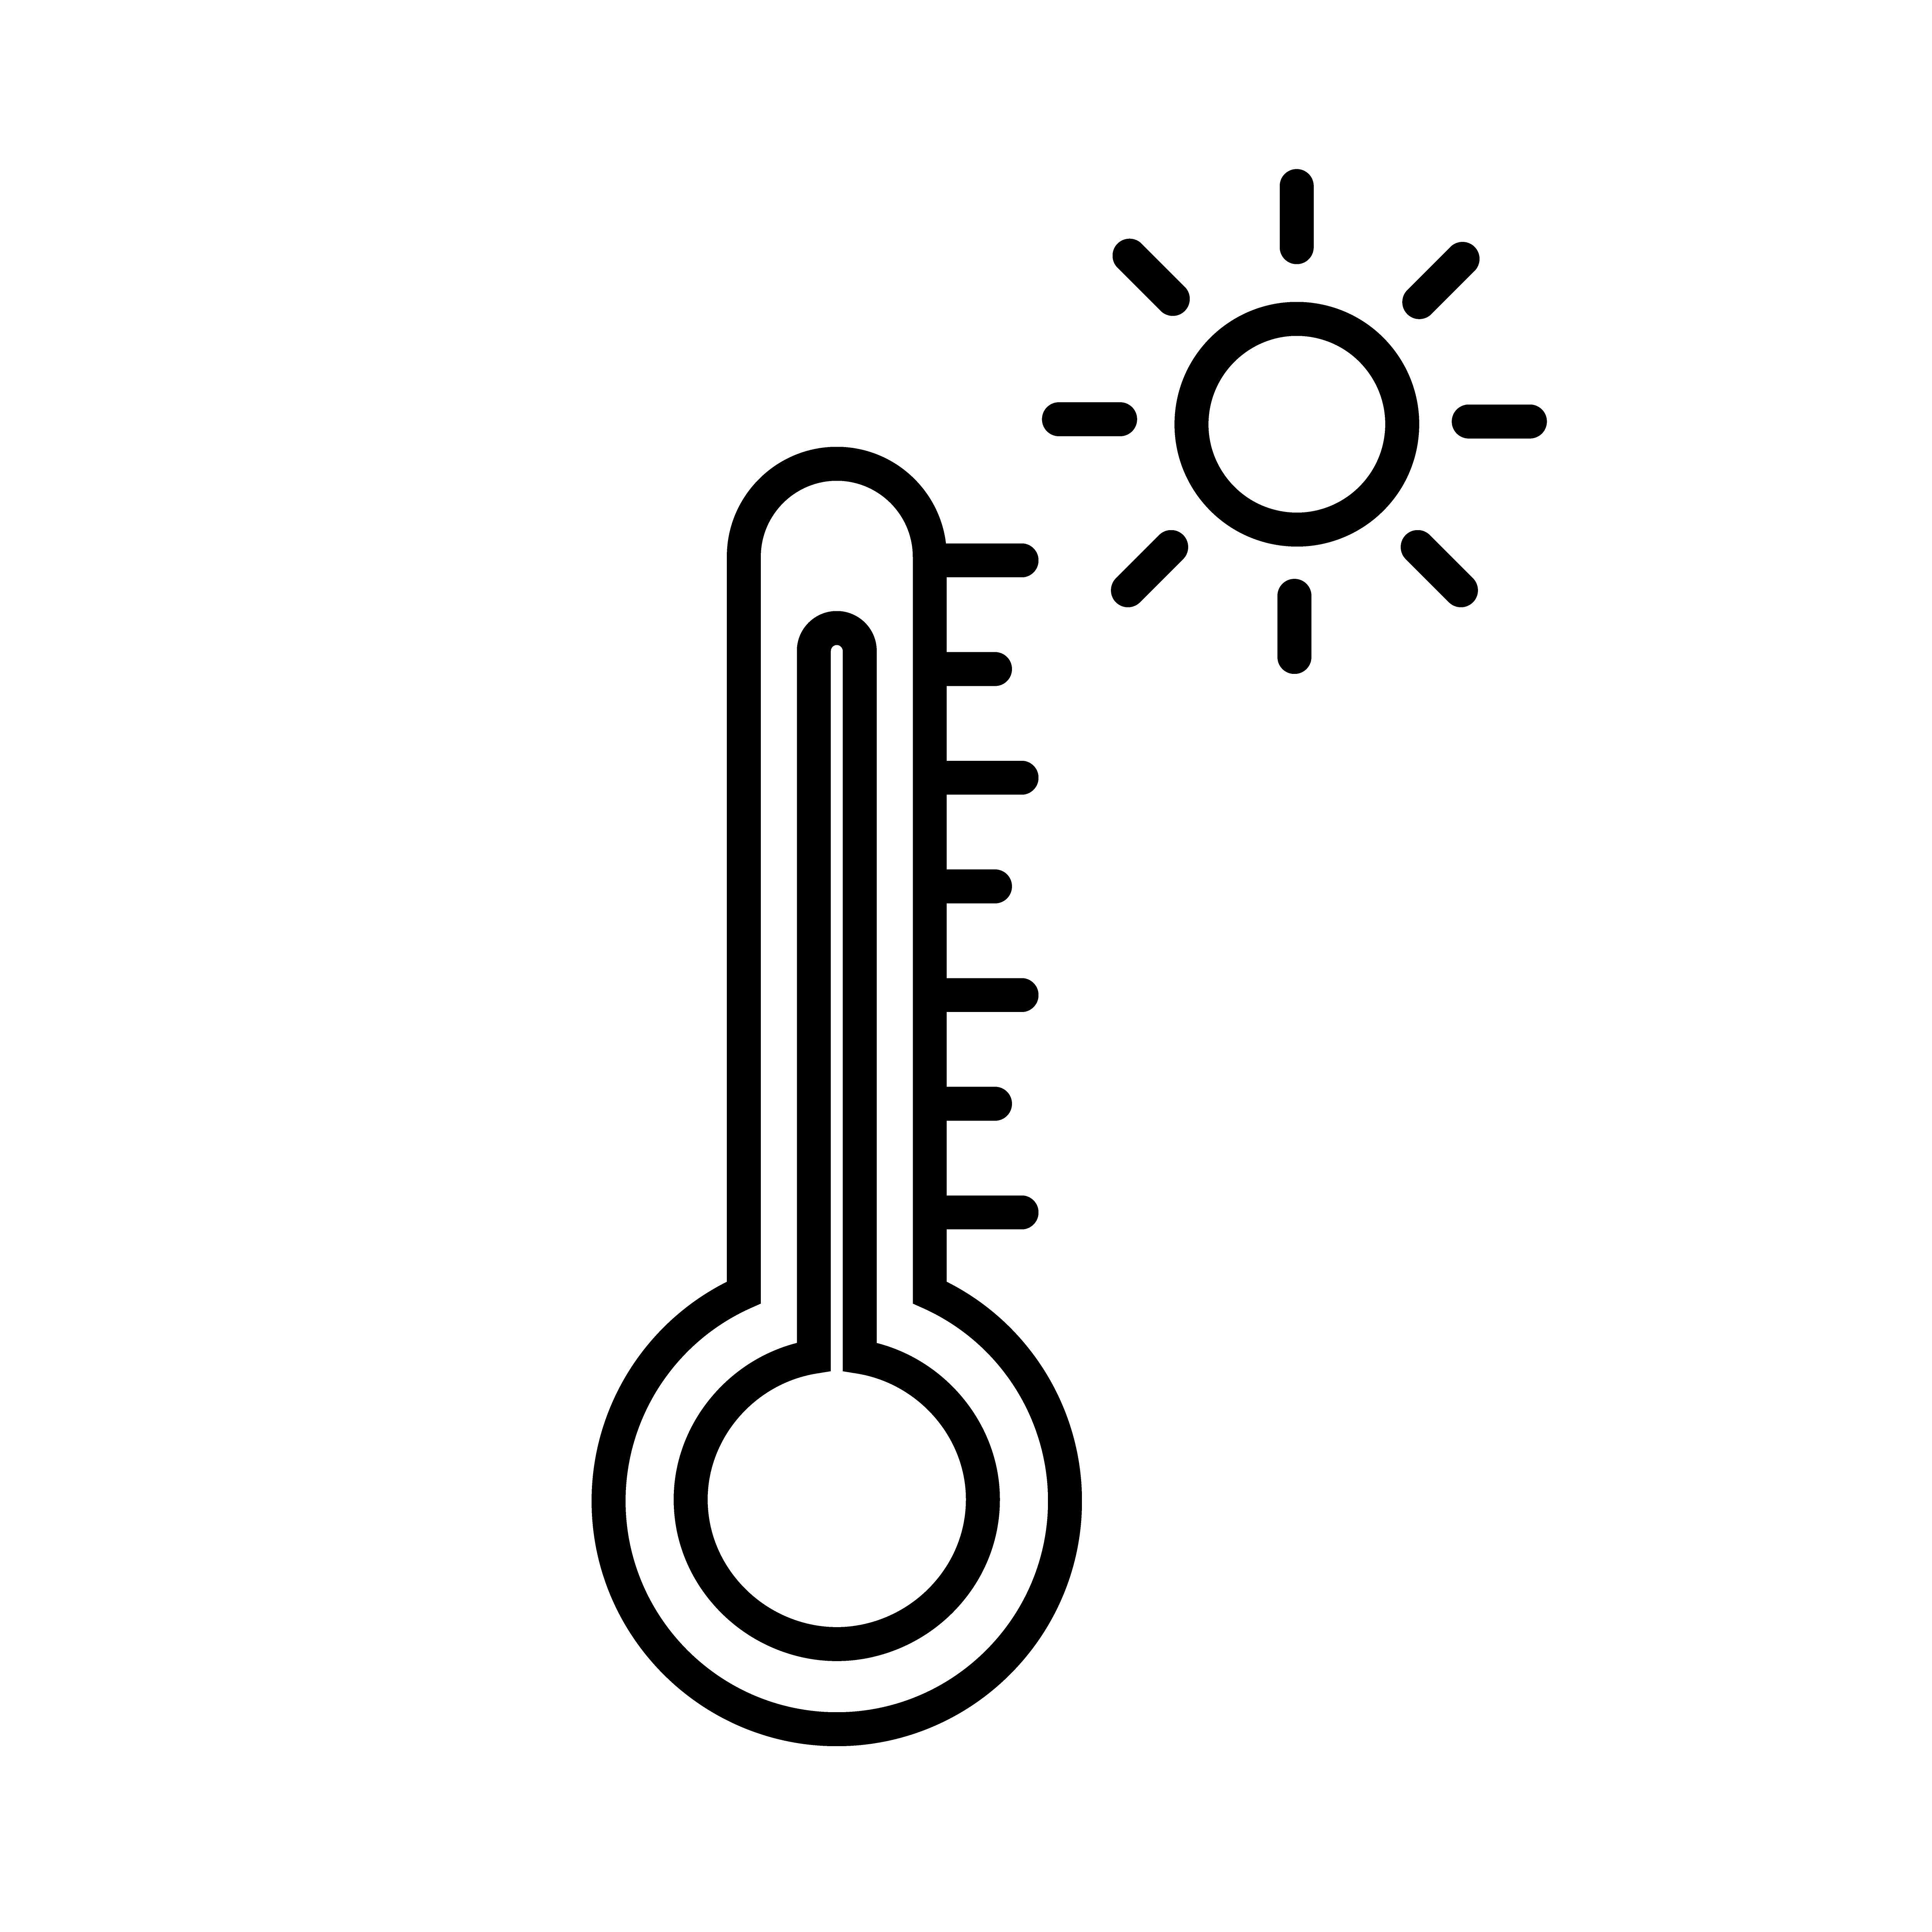 Heißwetter-Thermometer-Ikonen-Vektor 583489 Vektor Kunst bei Vecteezy